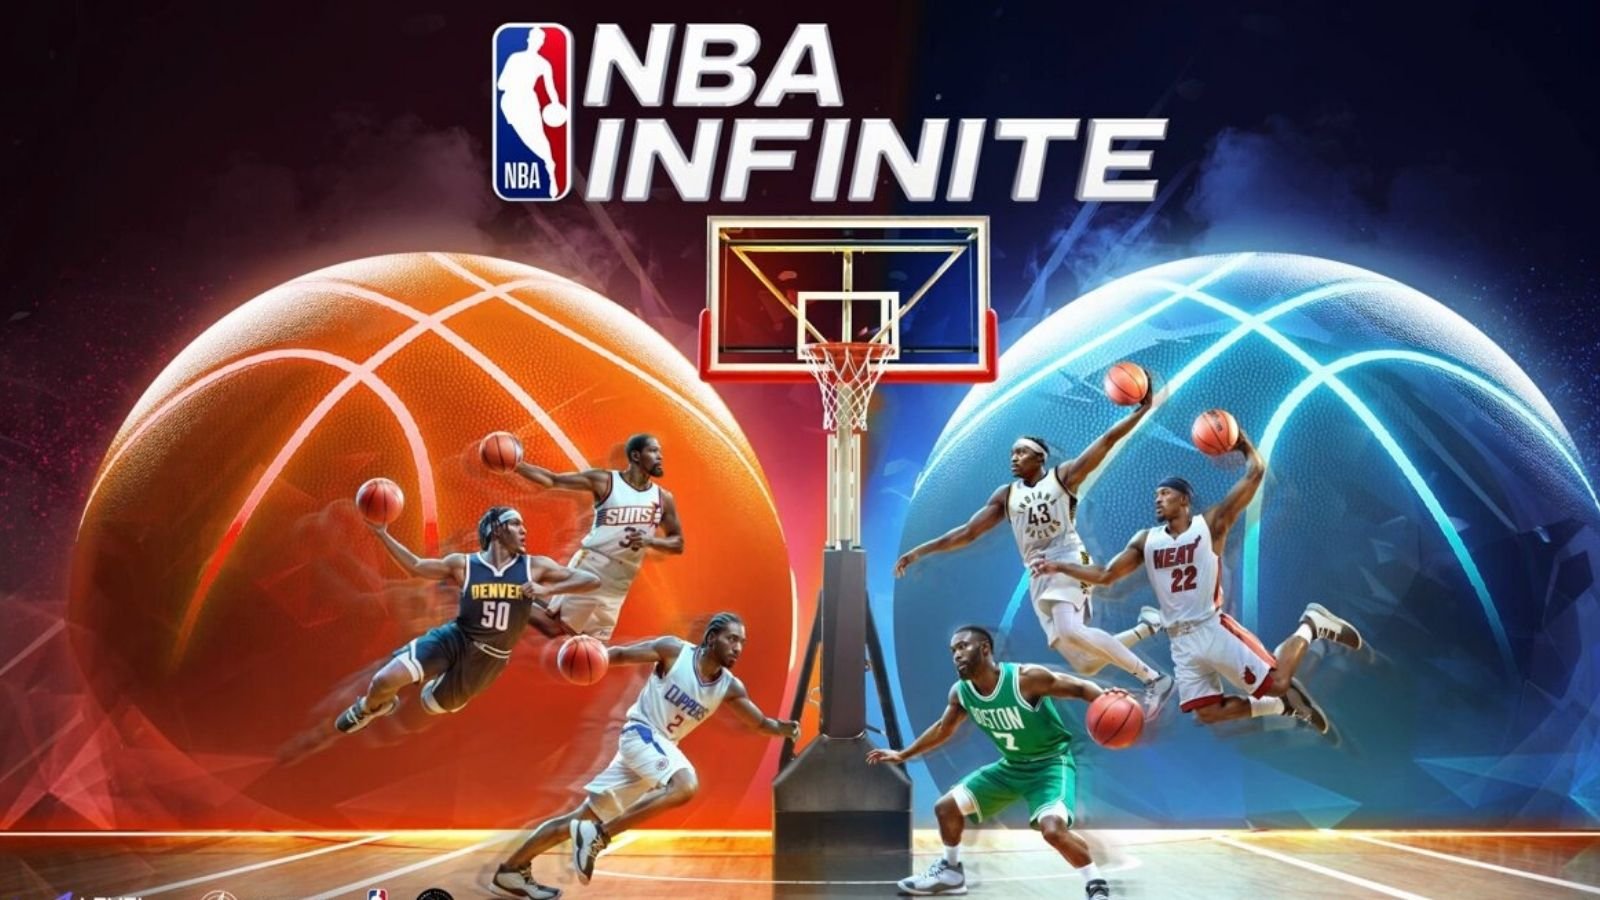 Level Infinite ve Lightspeed Studios yeni basketbol oyunları NBA Infinite’i resmi olarak oyun severlerin beğenisine sunumunu gerçekleştirdi ve artık Türkiye'de.